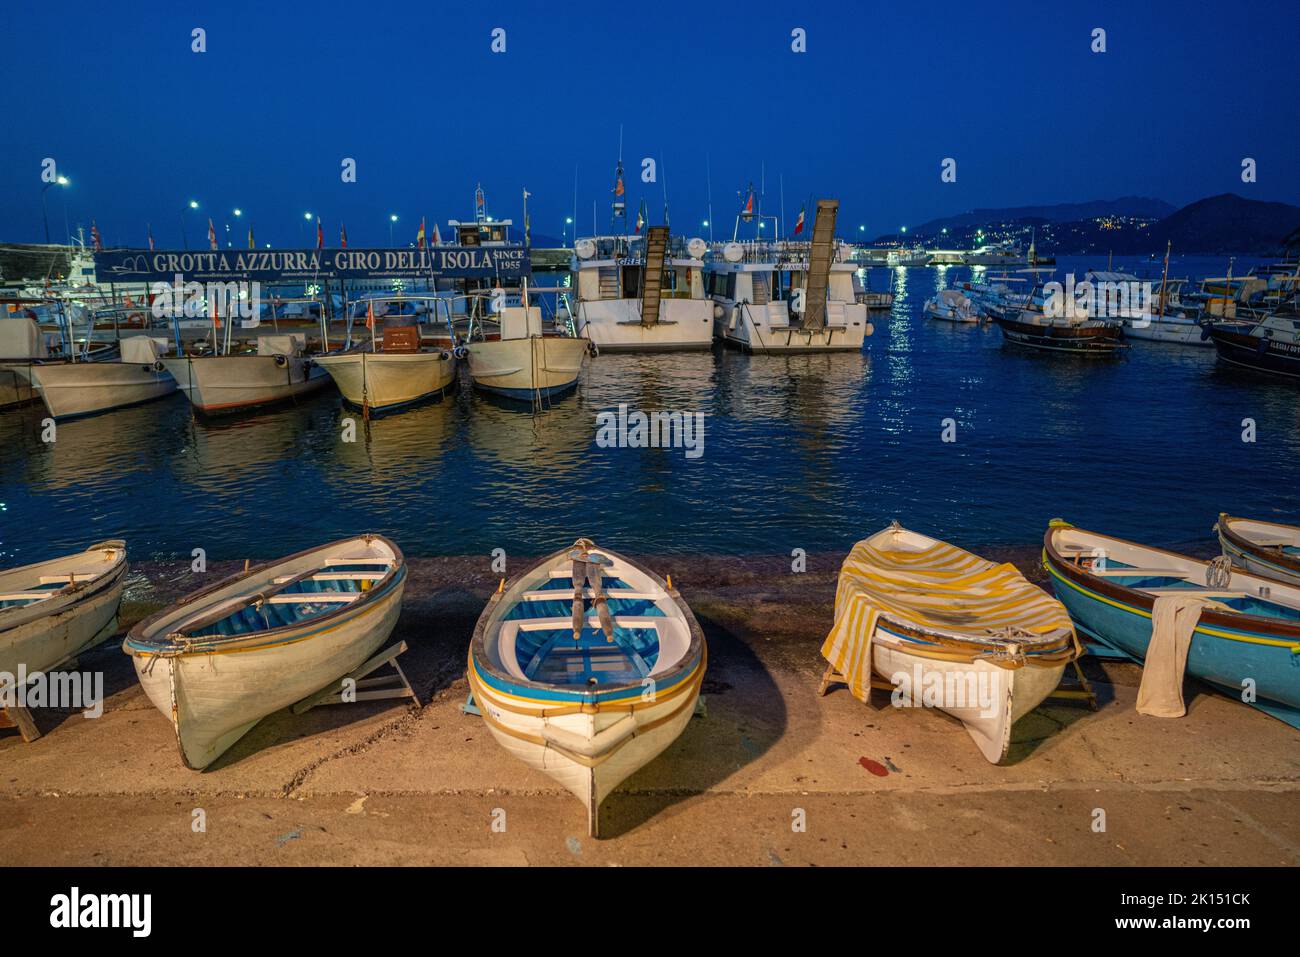 Capri island, the dock of Marina grande by night Stock Photo